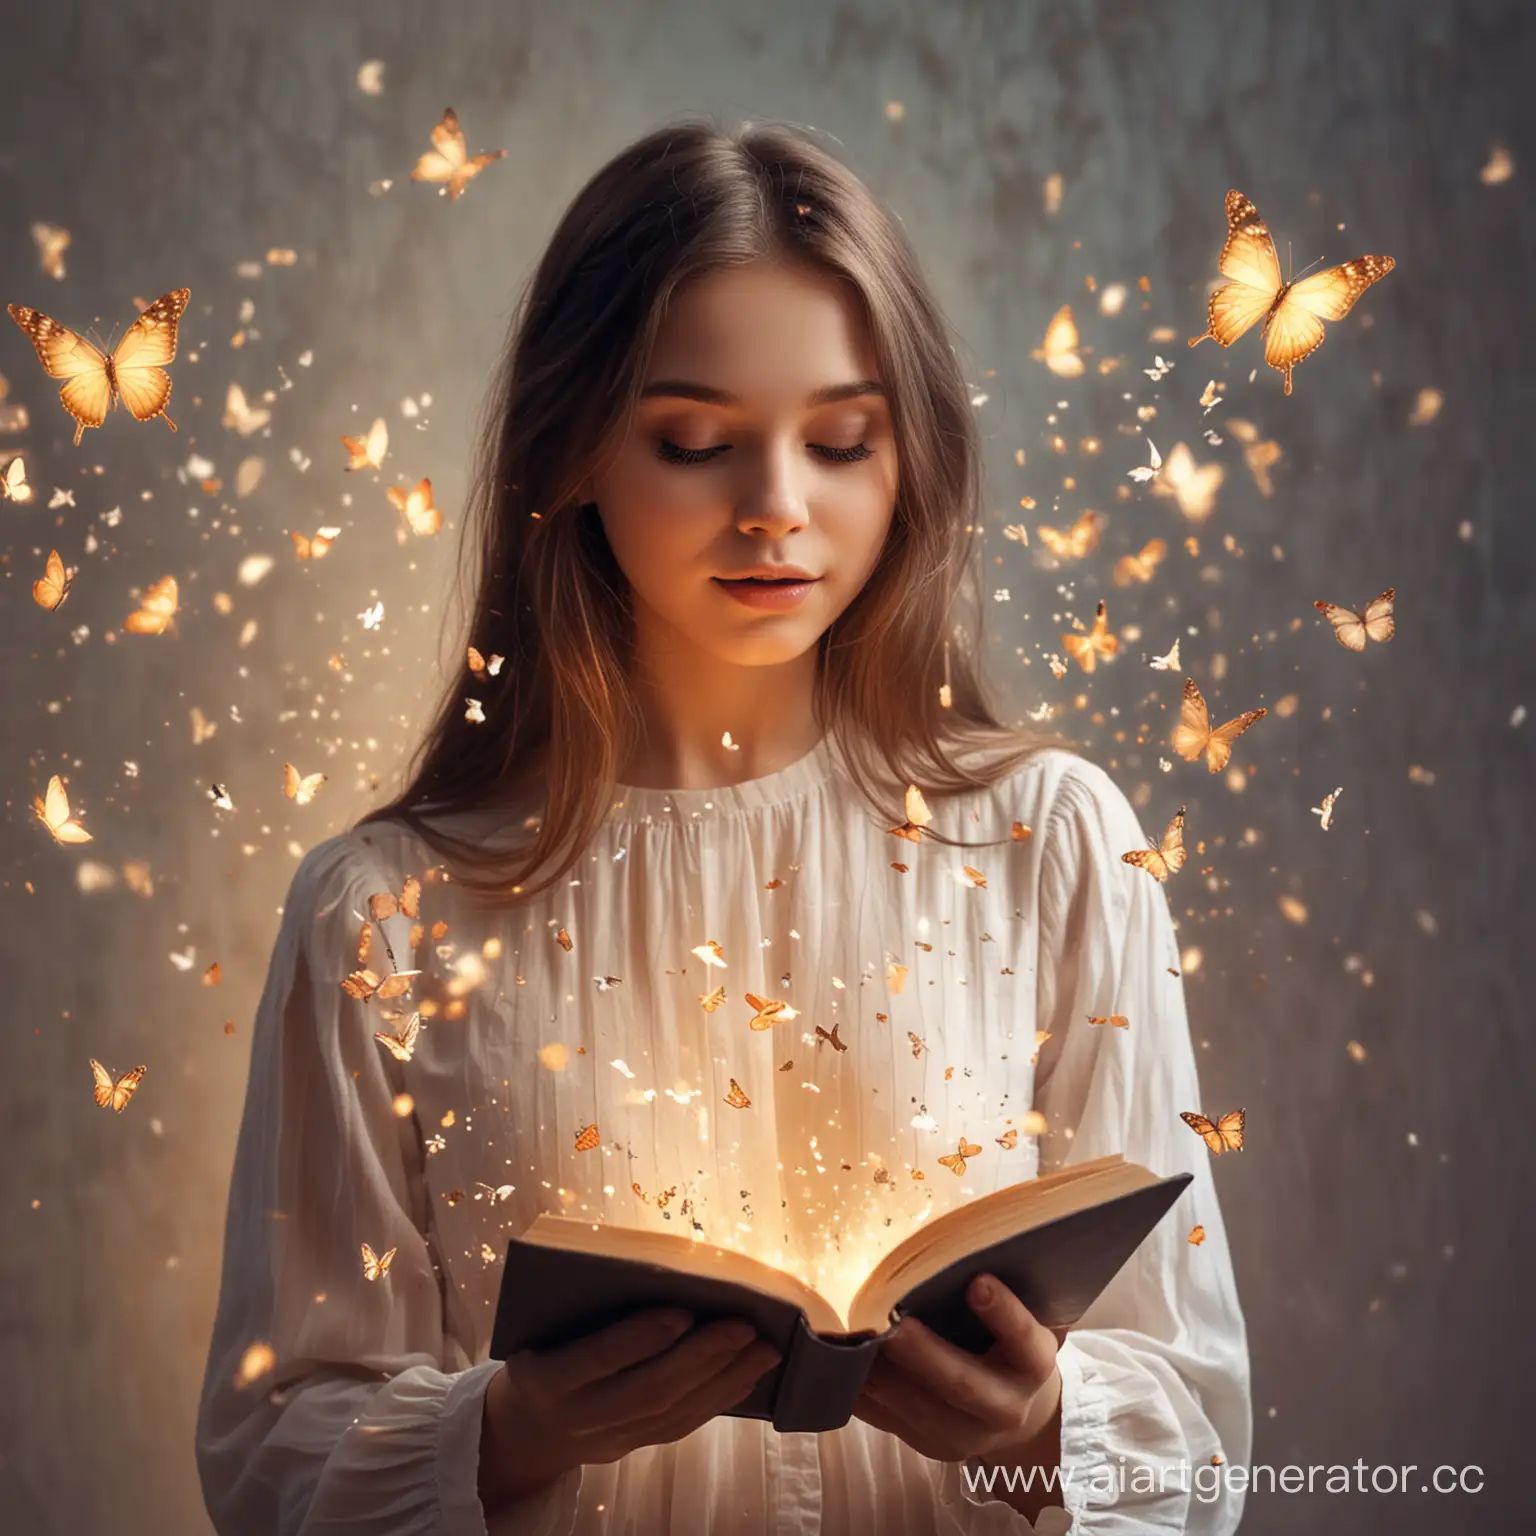 девочка держит в руках книгу, из книги вылетают бабочки, волшебство, мягкий свет